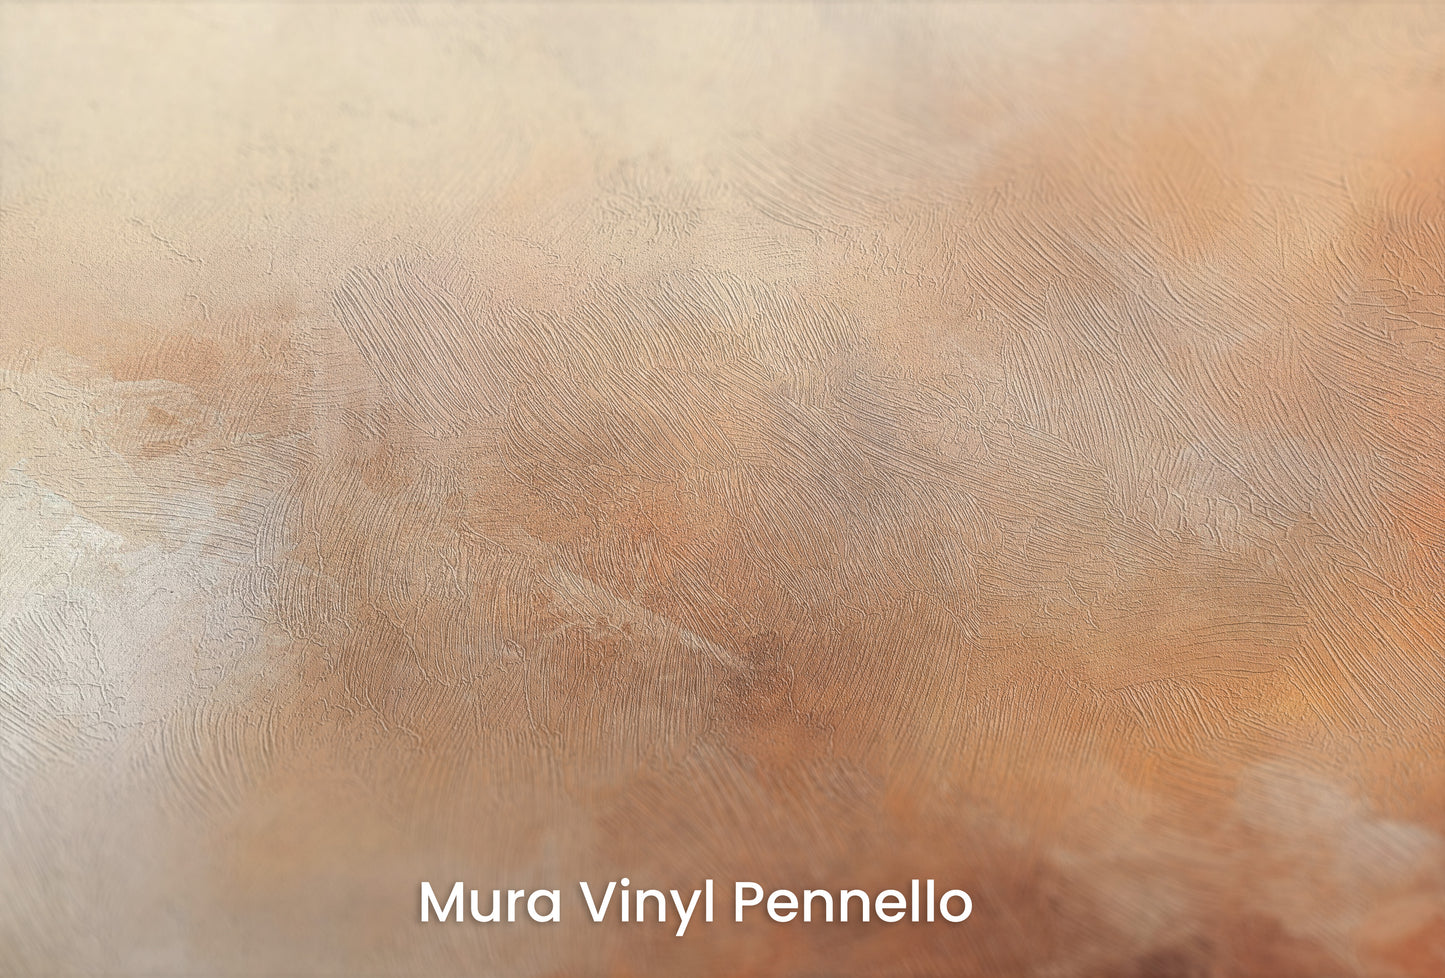 Zbliżenie na artystyczną fototapetę o nazwie DUSK RADIANCE ABSTRACT na podłożu Mura Vinyl Pennello - faktura pociągnięć pędzla malarskiego.